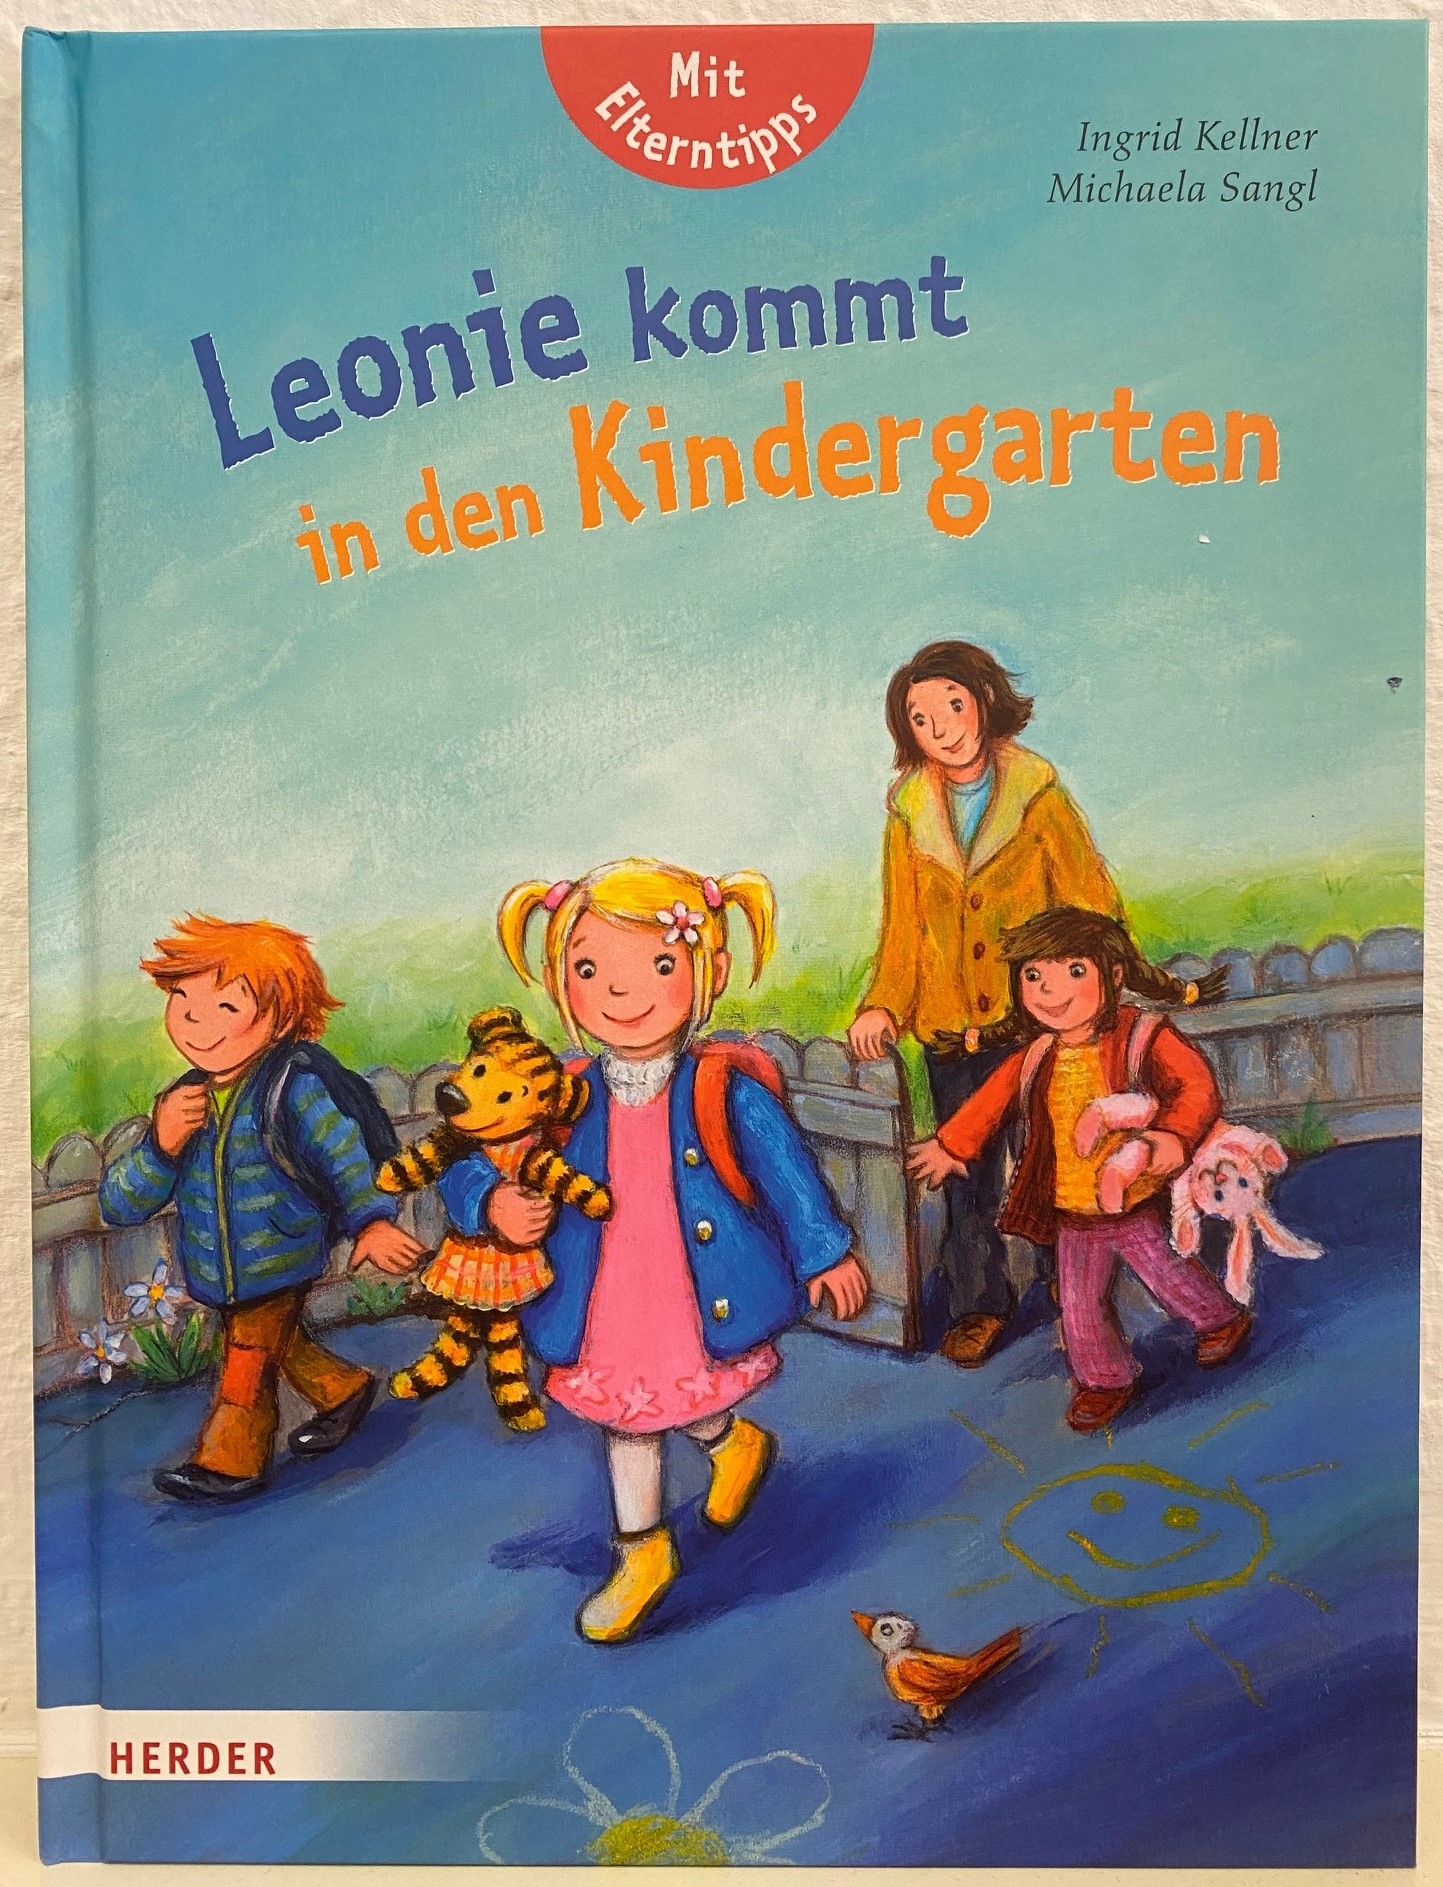 Leonie kommt in den Kindergarten